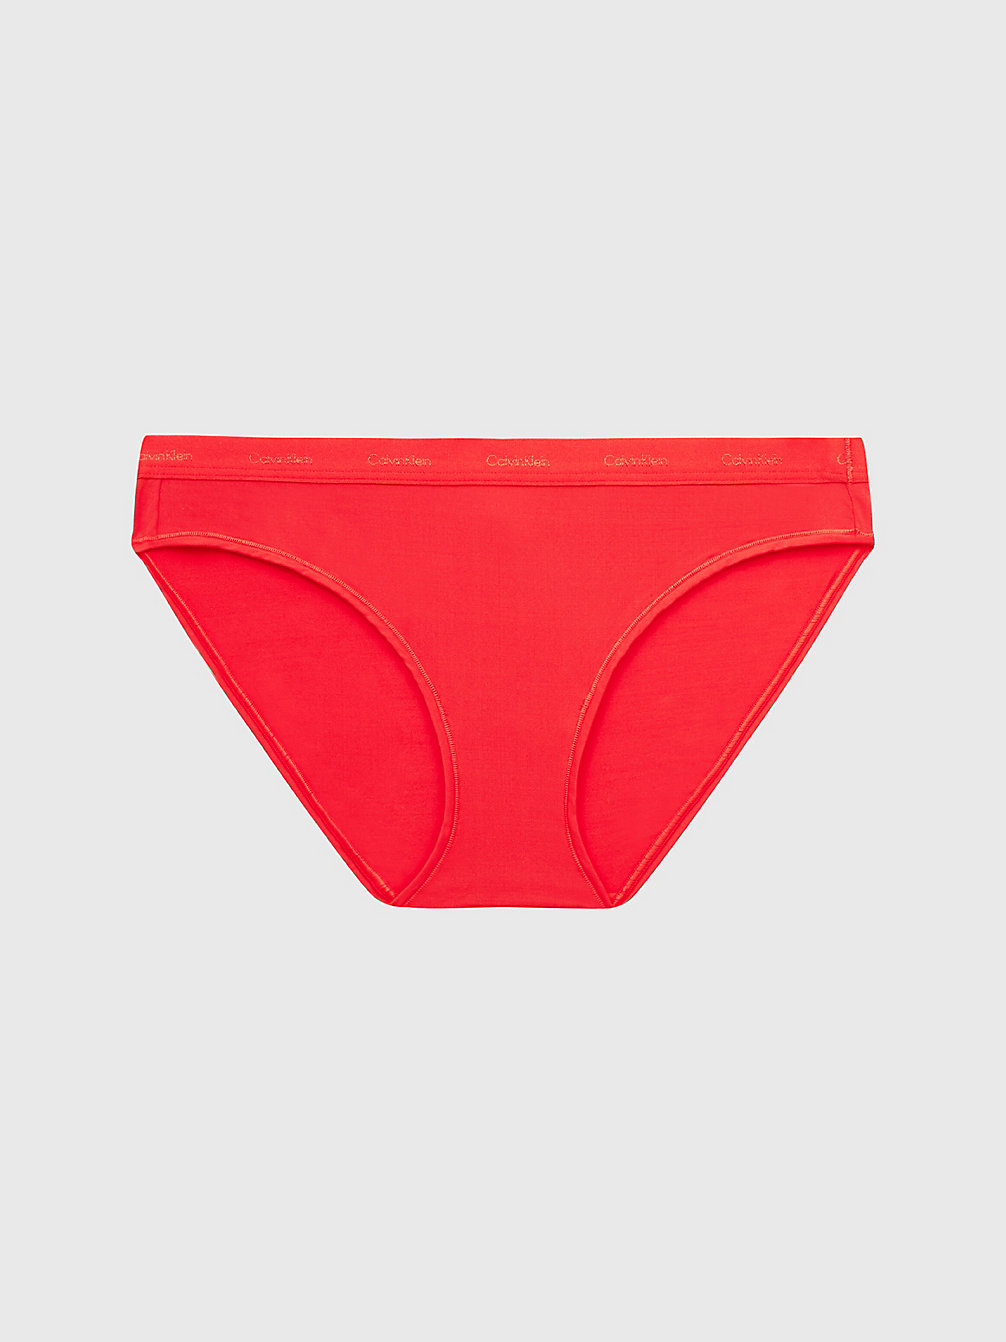 ORANGE ODYSSEY Bikini Brief - Form To Body undefined women Calvin Klein